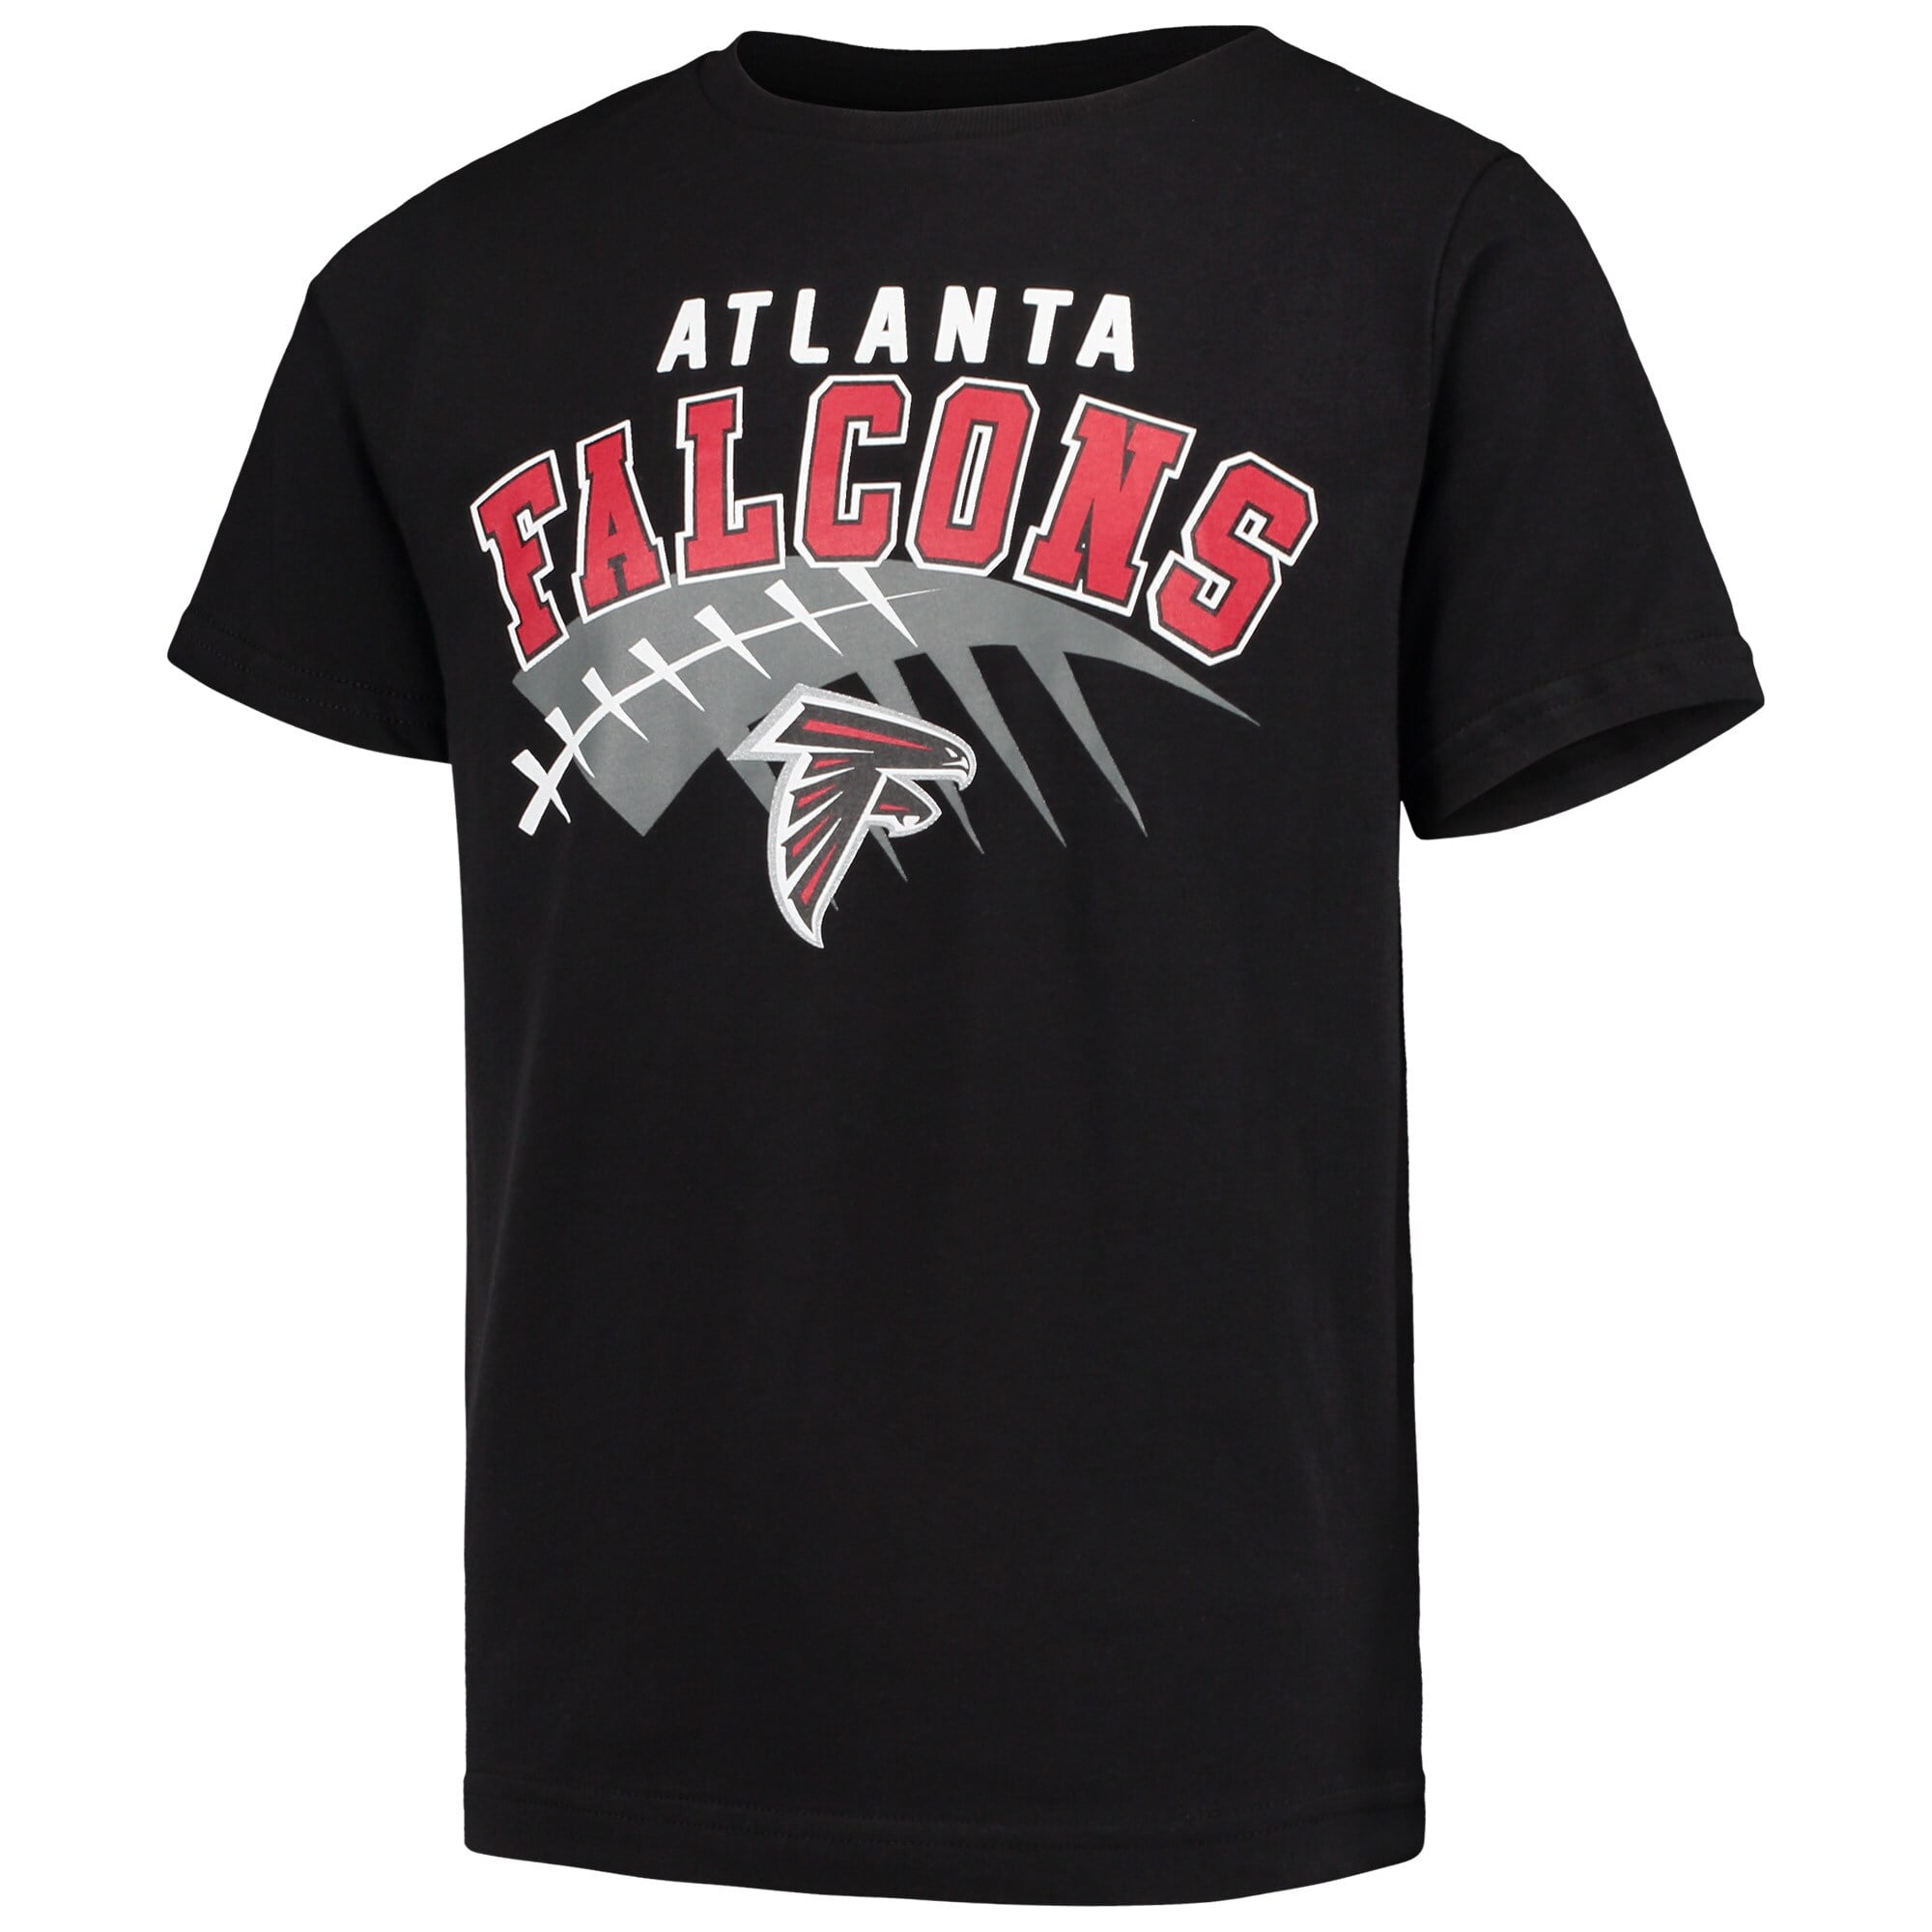 atlanta falcons youth shirts